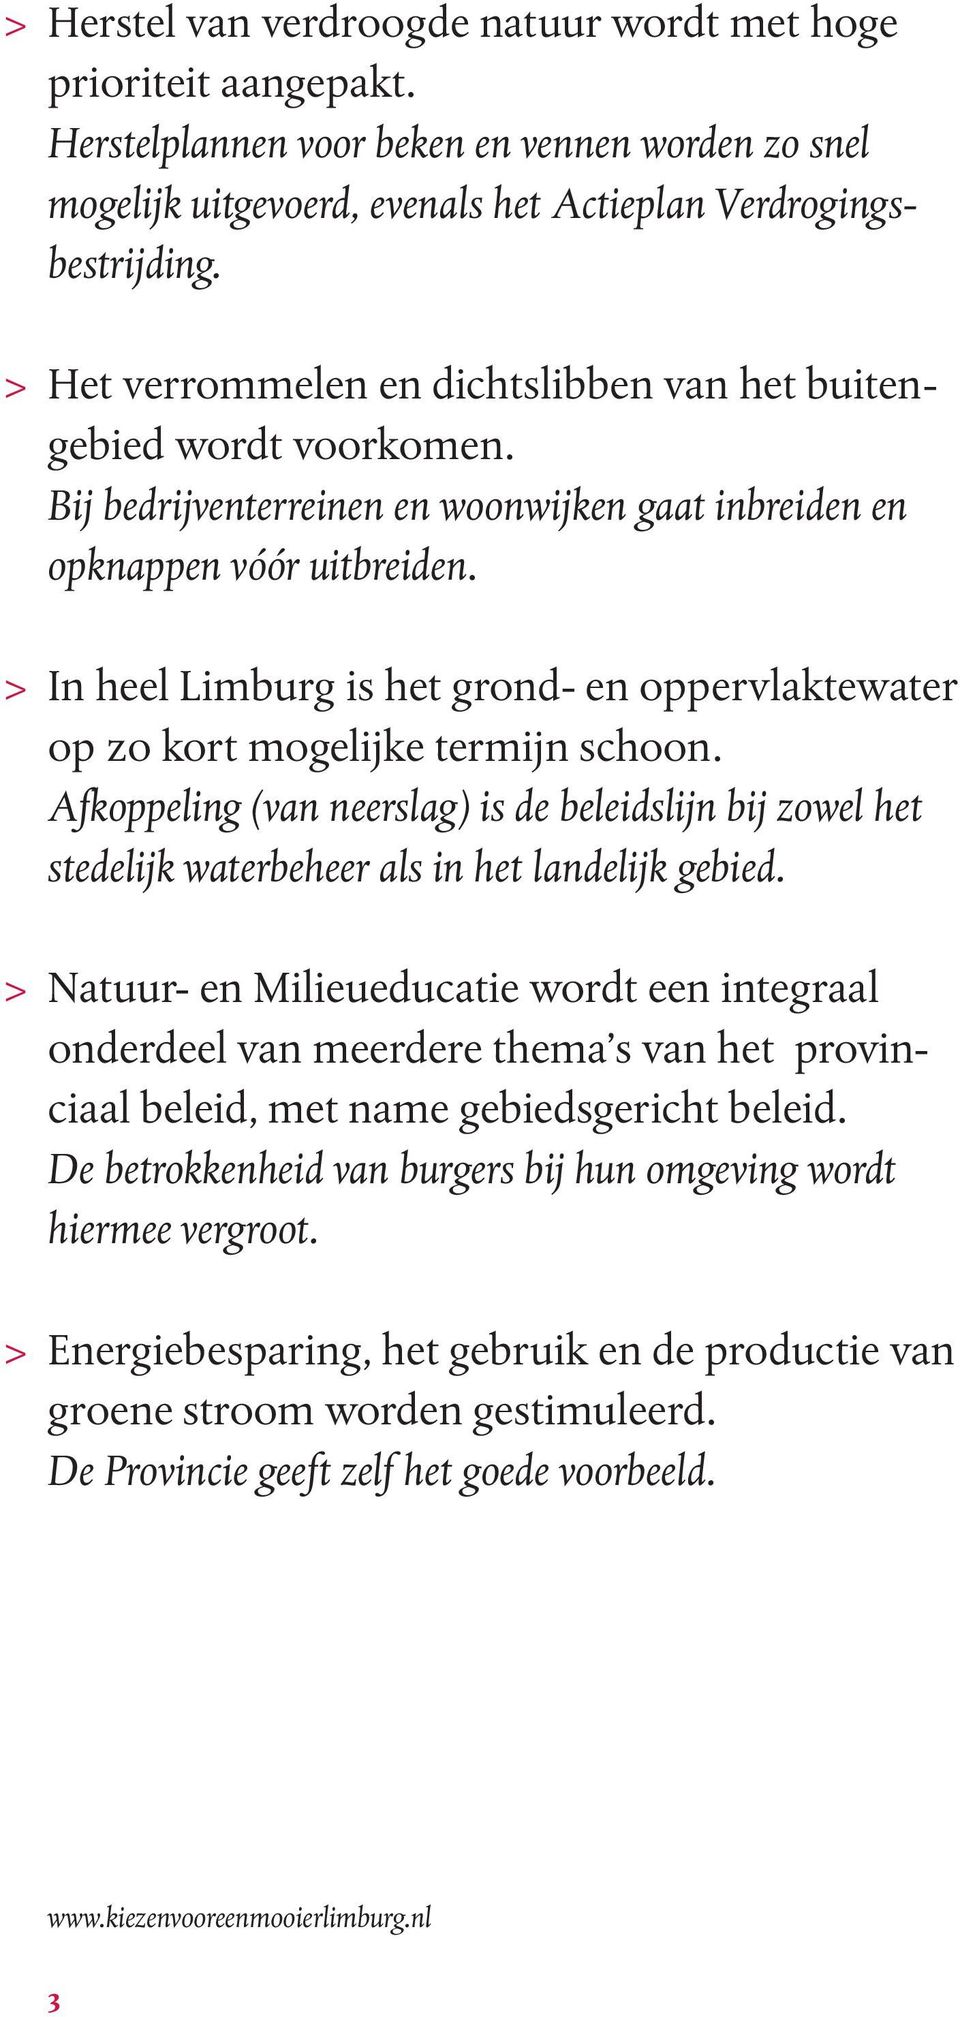 > In heel Limburg is het grond- en oppervlaktewater op zo kort mogelijke termijn schoon. Afkoppeling (van neerslag) is de beleidslijn bij zowel het stedelijk waterbeheer als in het landelijk gebied.